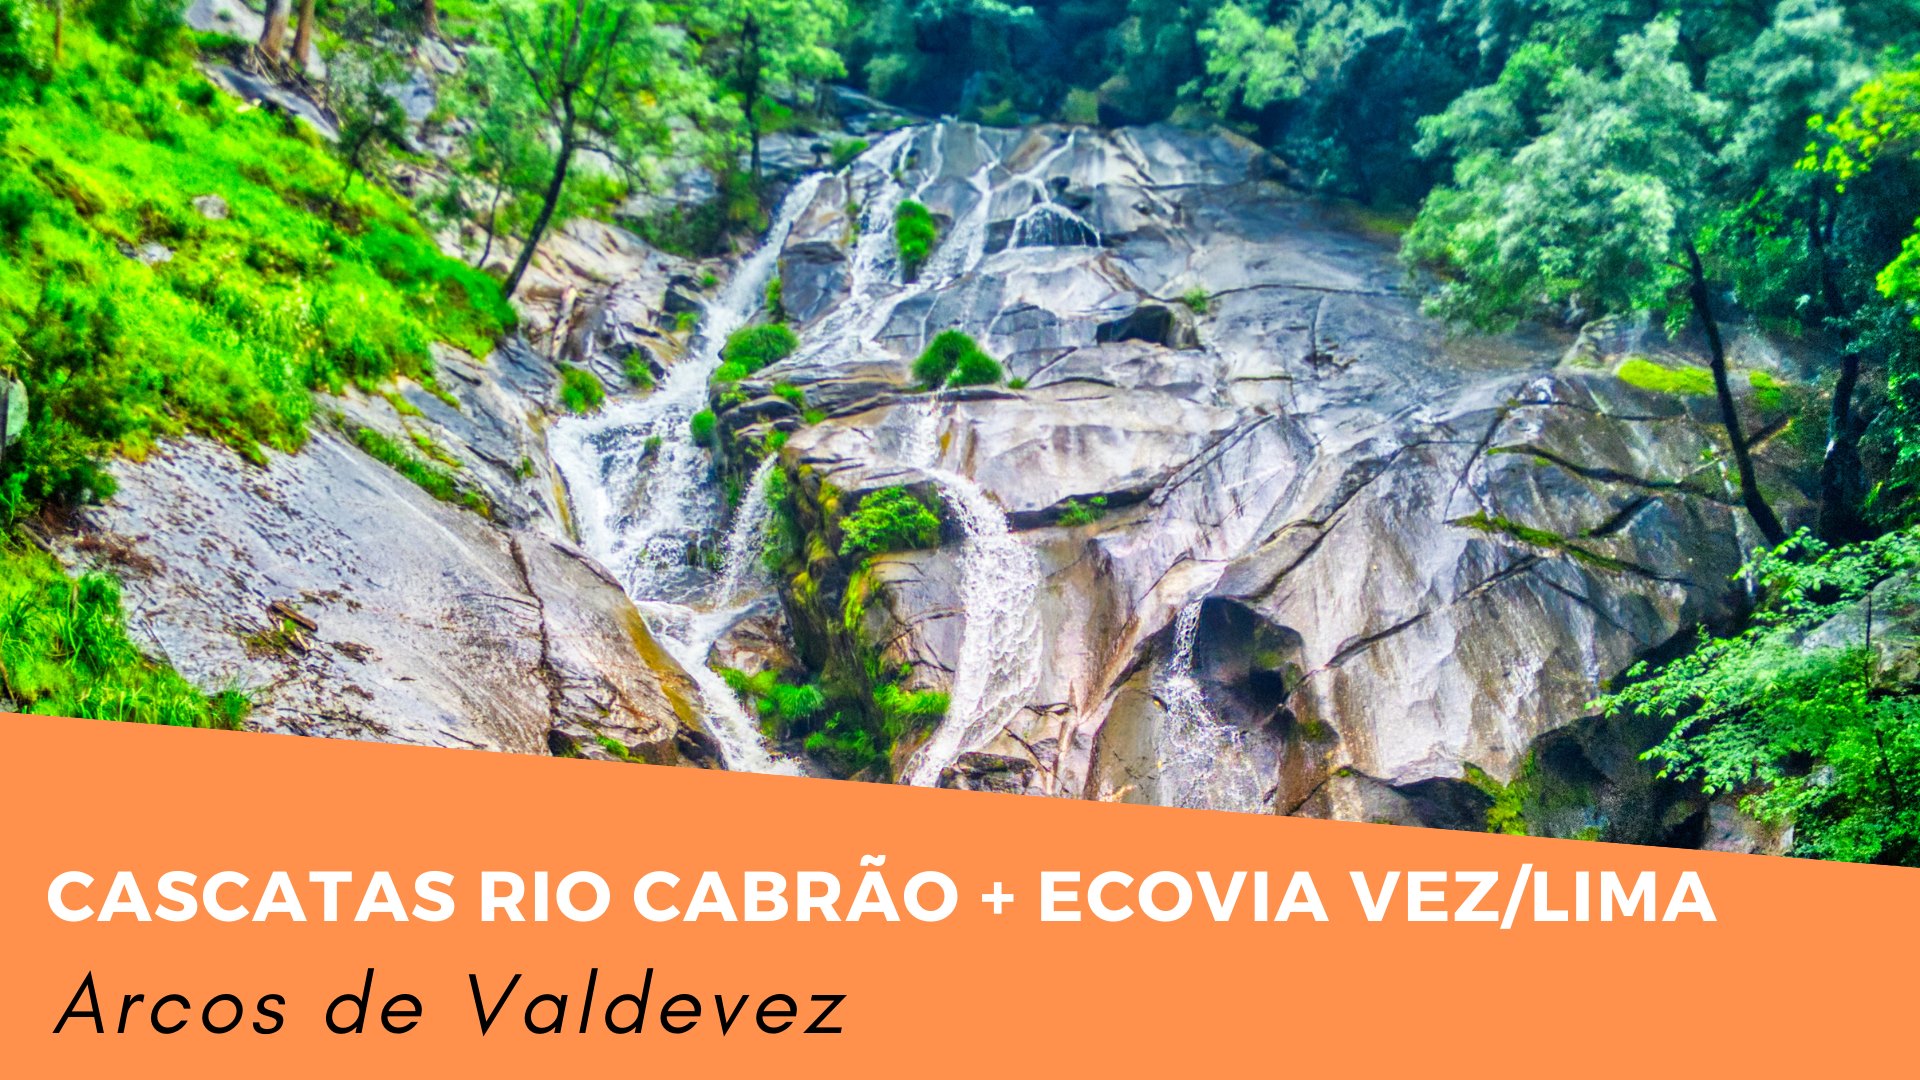 Cascatas Rio Cabrão + Ecovia do Vez